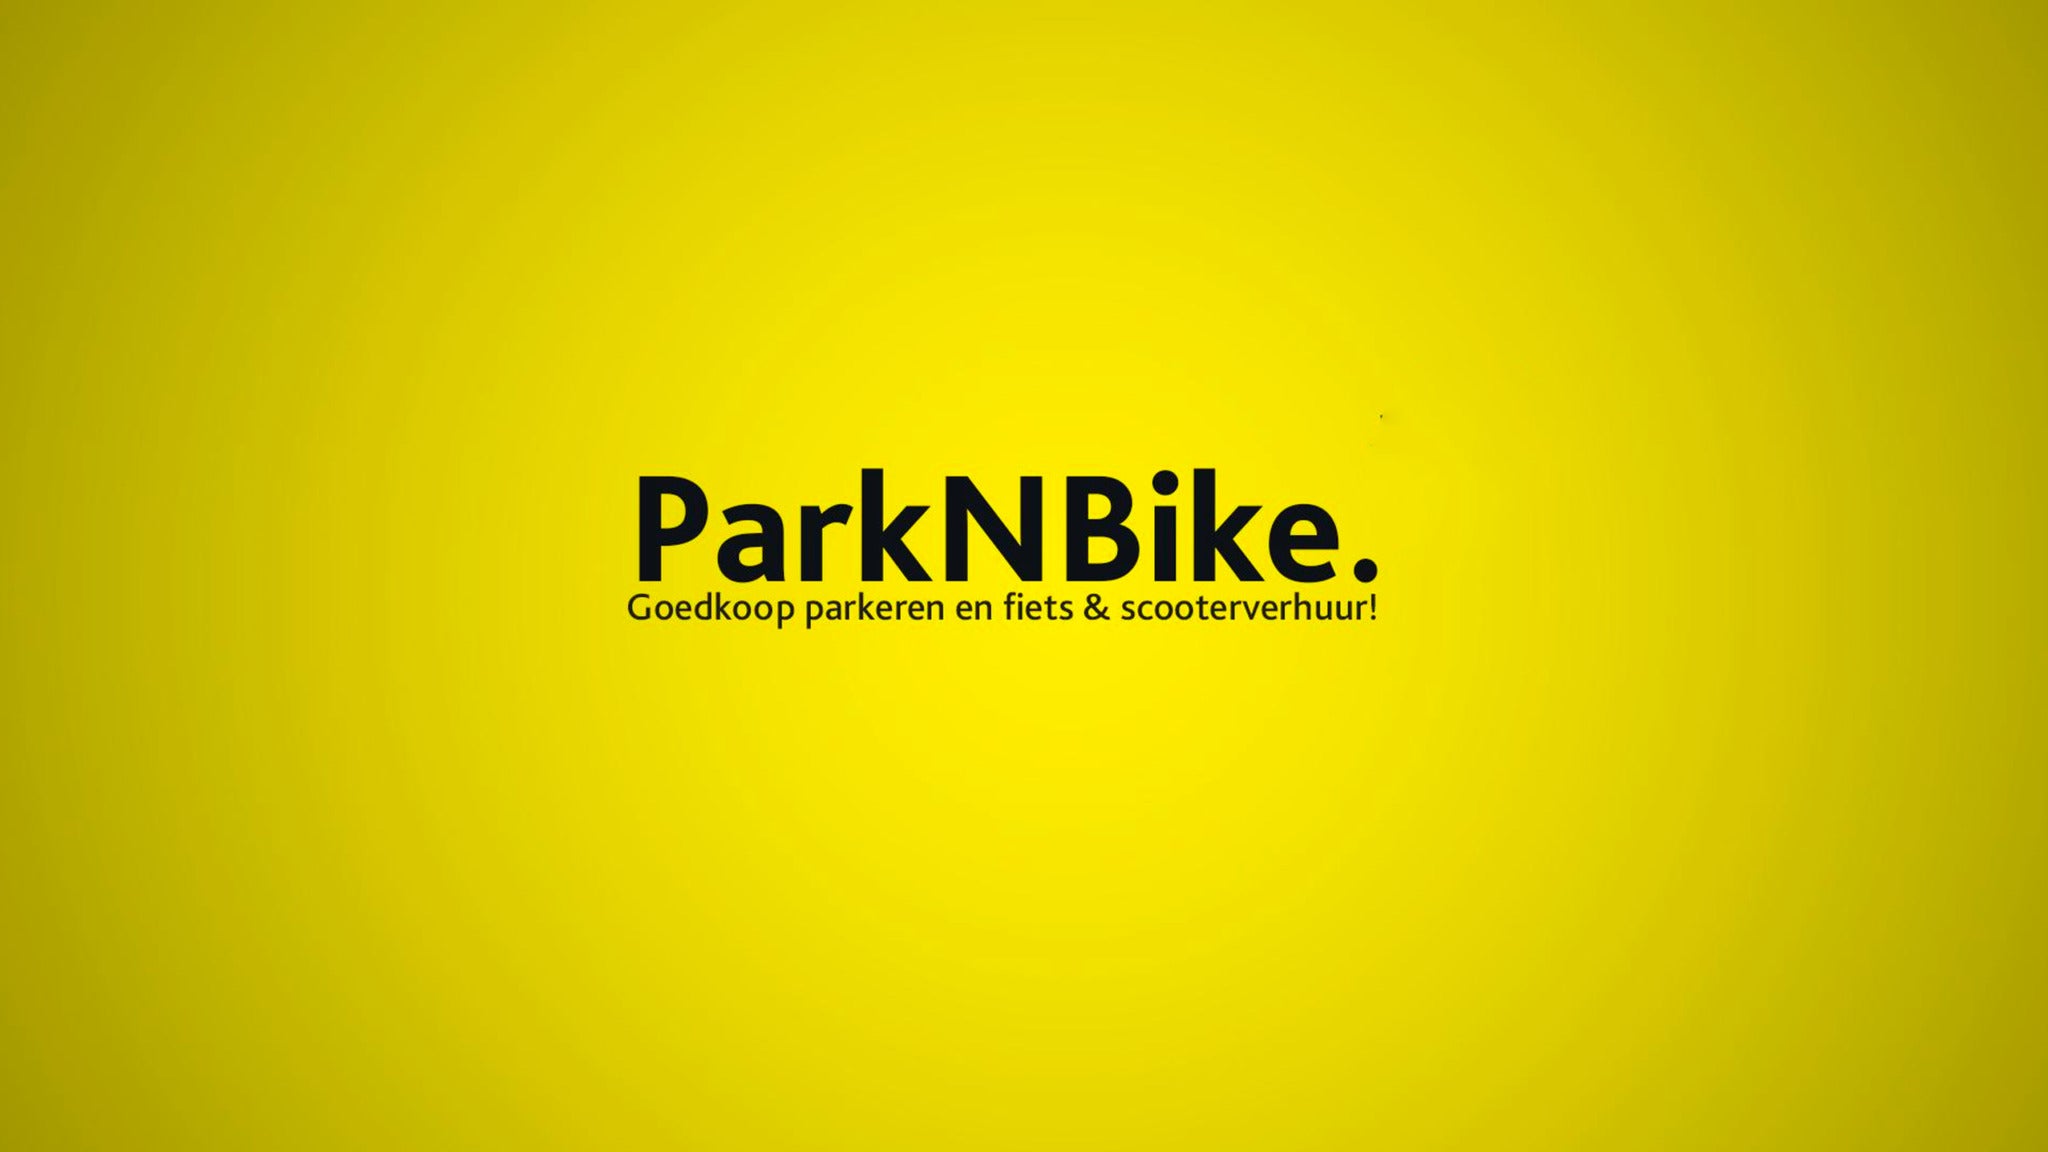 Parking ticket ParkNBike day ticket